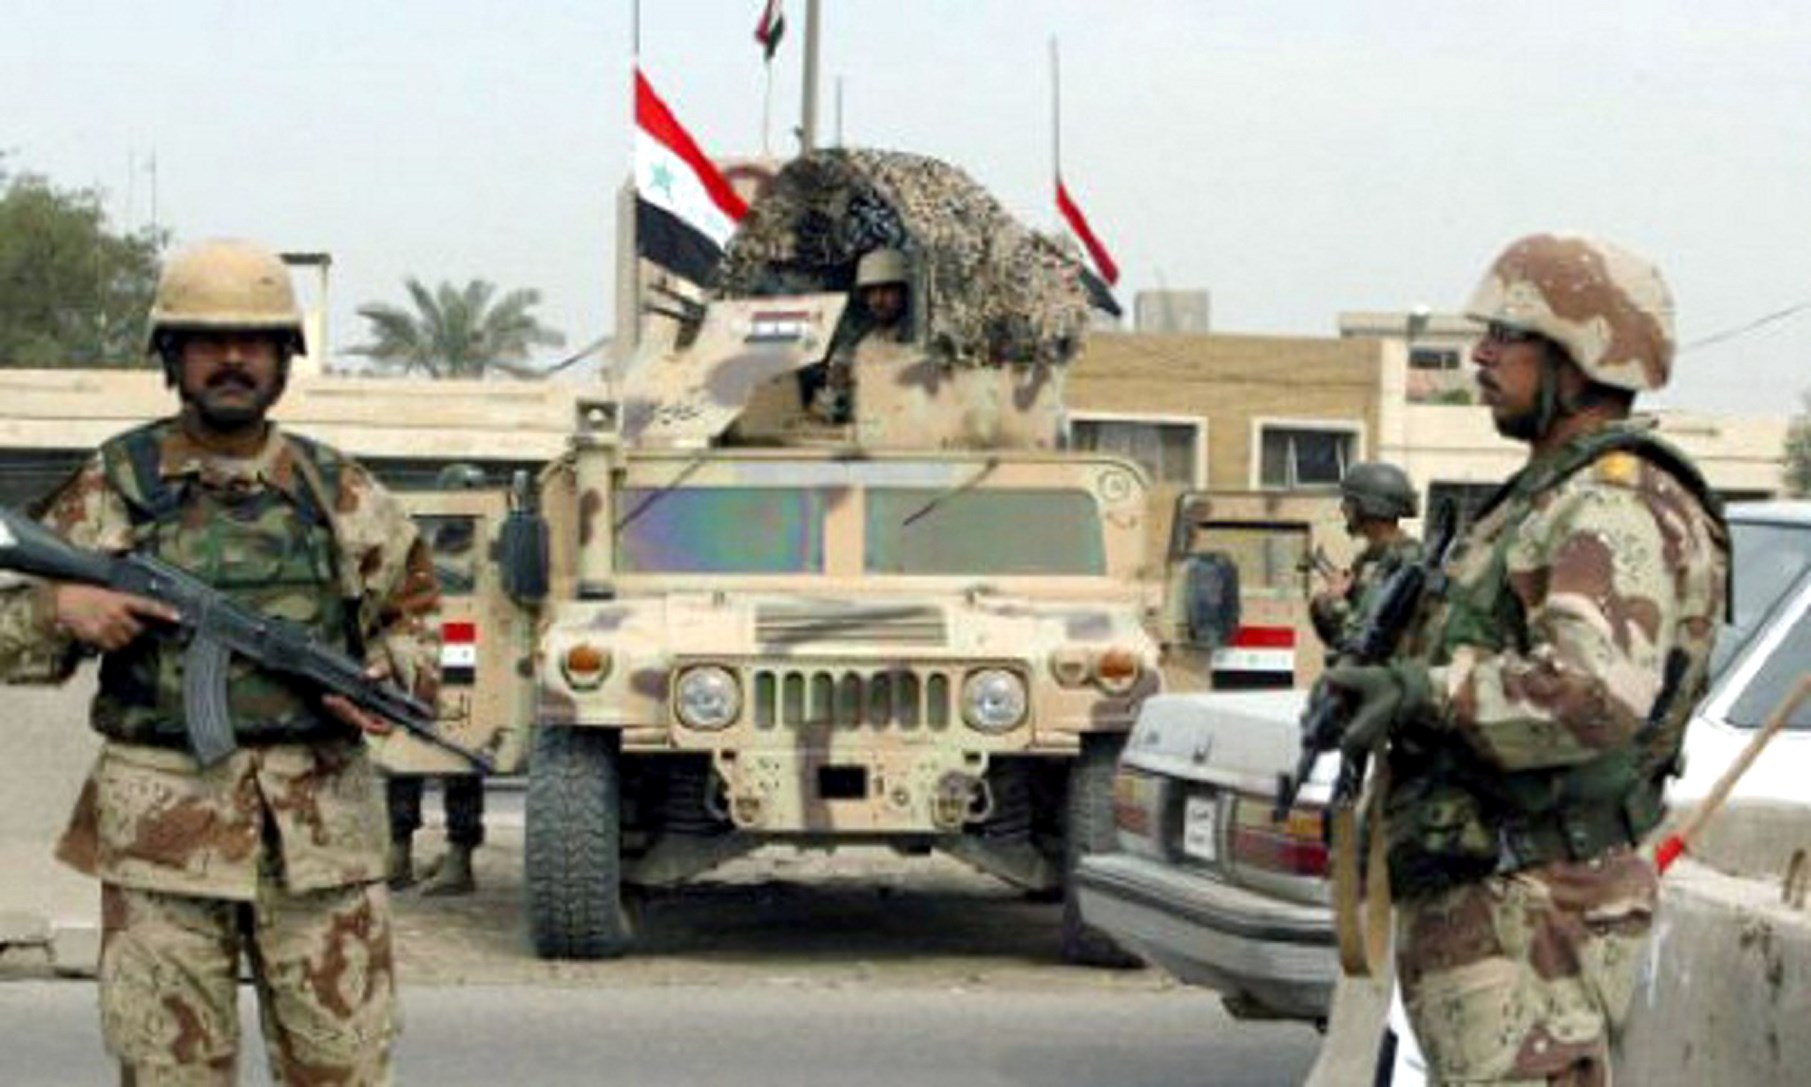 عاجل... التحالف الدولي يتخبط وينفي وجود اتفاق رسمي لوقف إطلاق النار بين القوات العراقية والبيشمركة!!